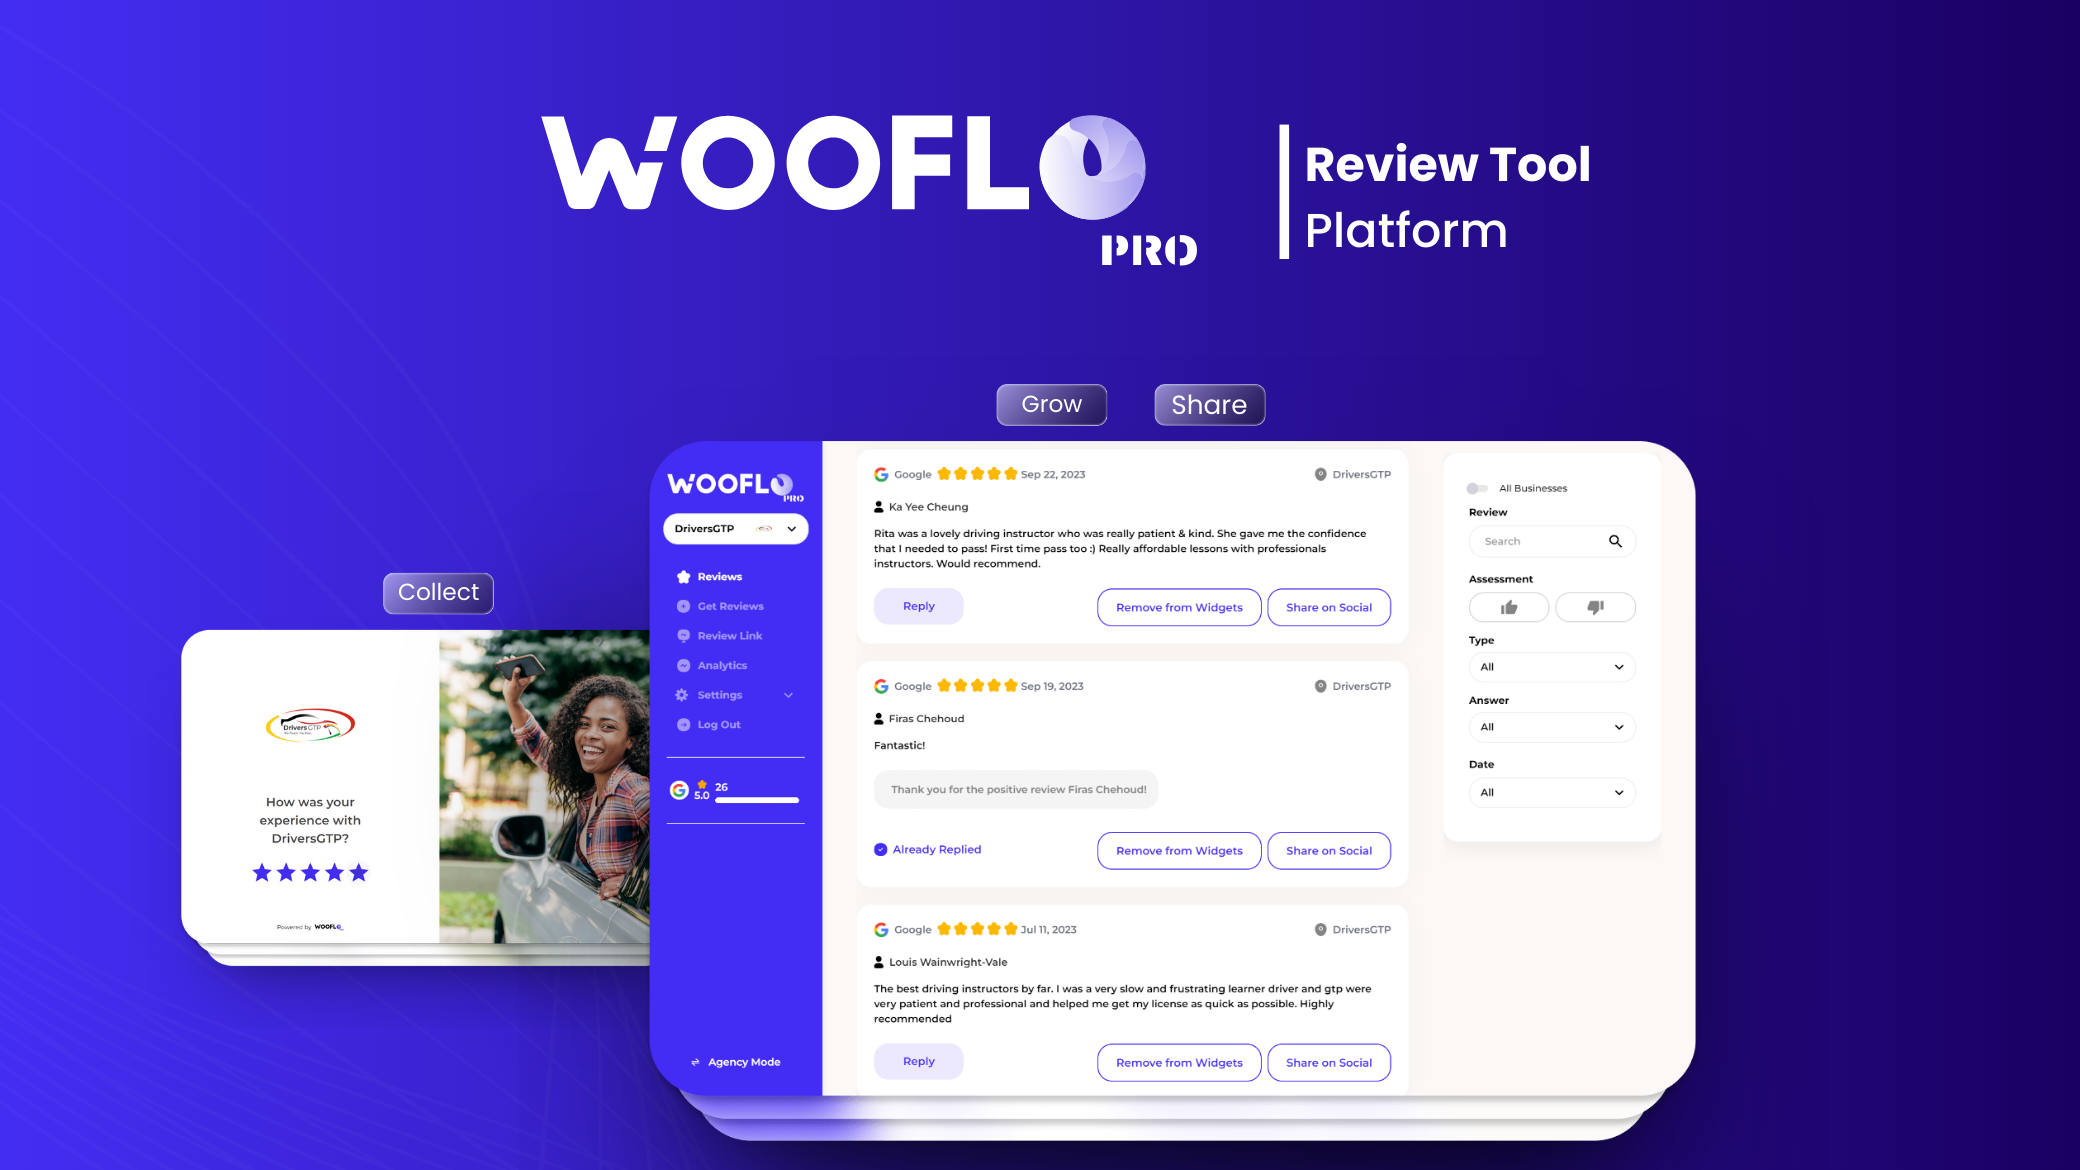 Wooflo Pro Wooflo Pro Review tool platform